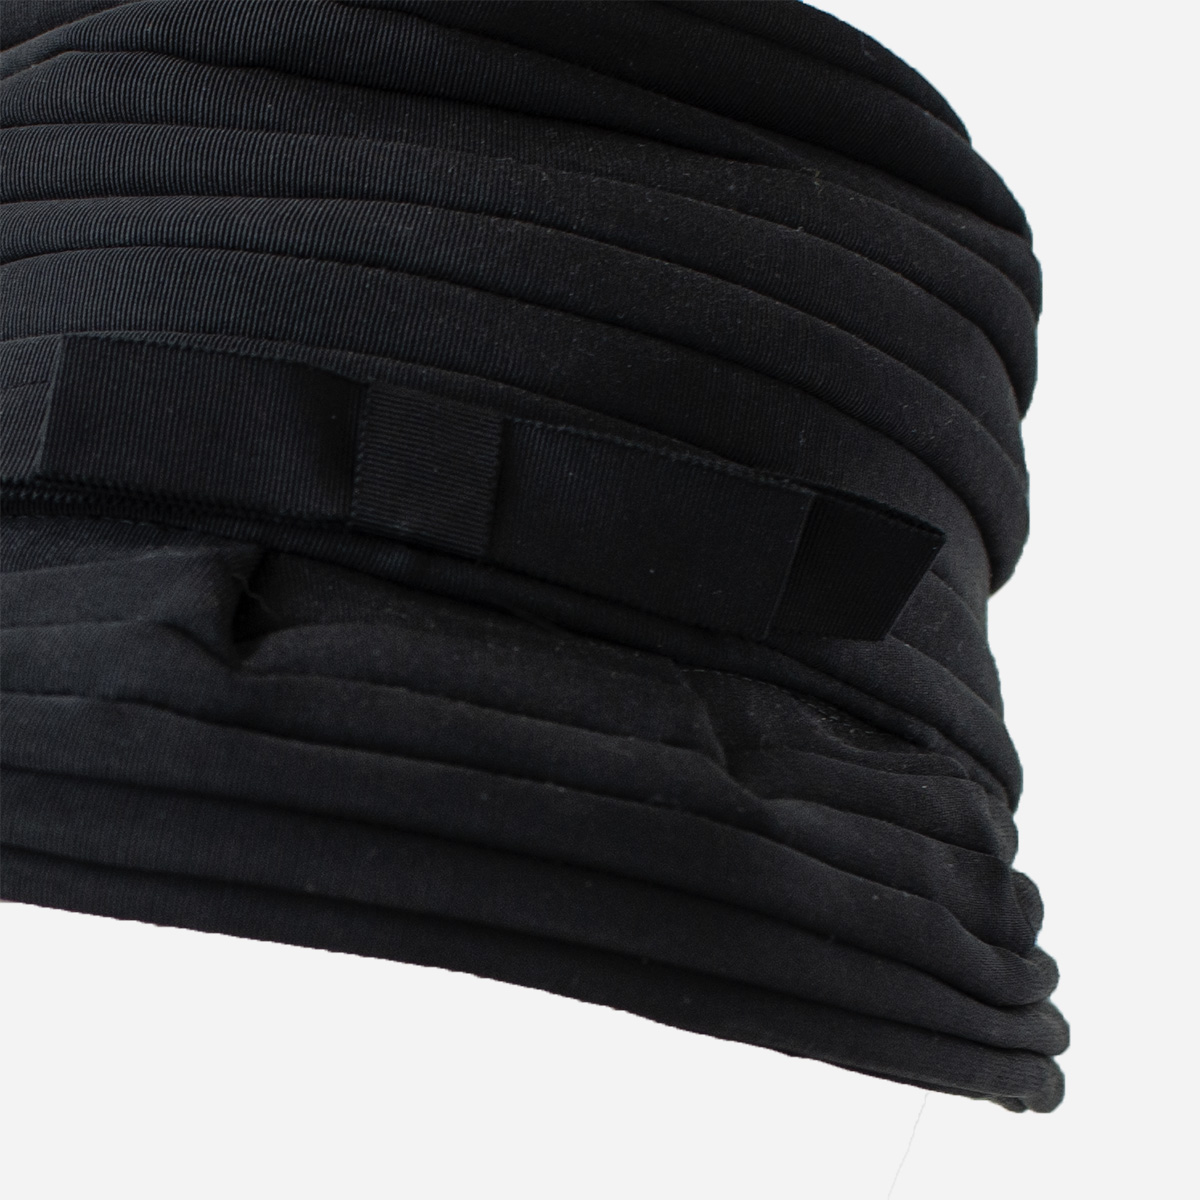 black hat tiered hat